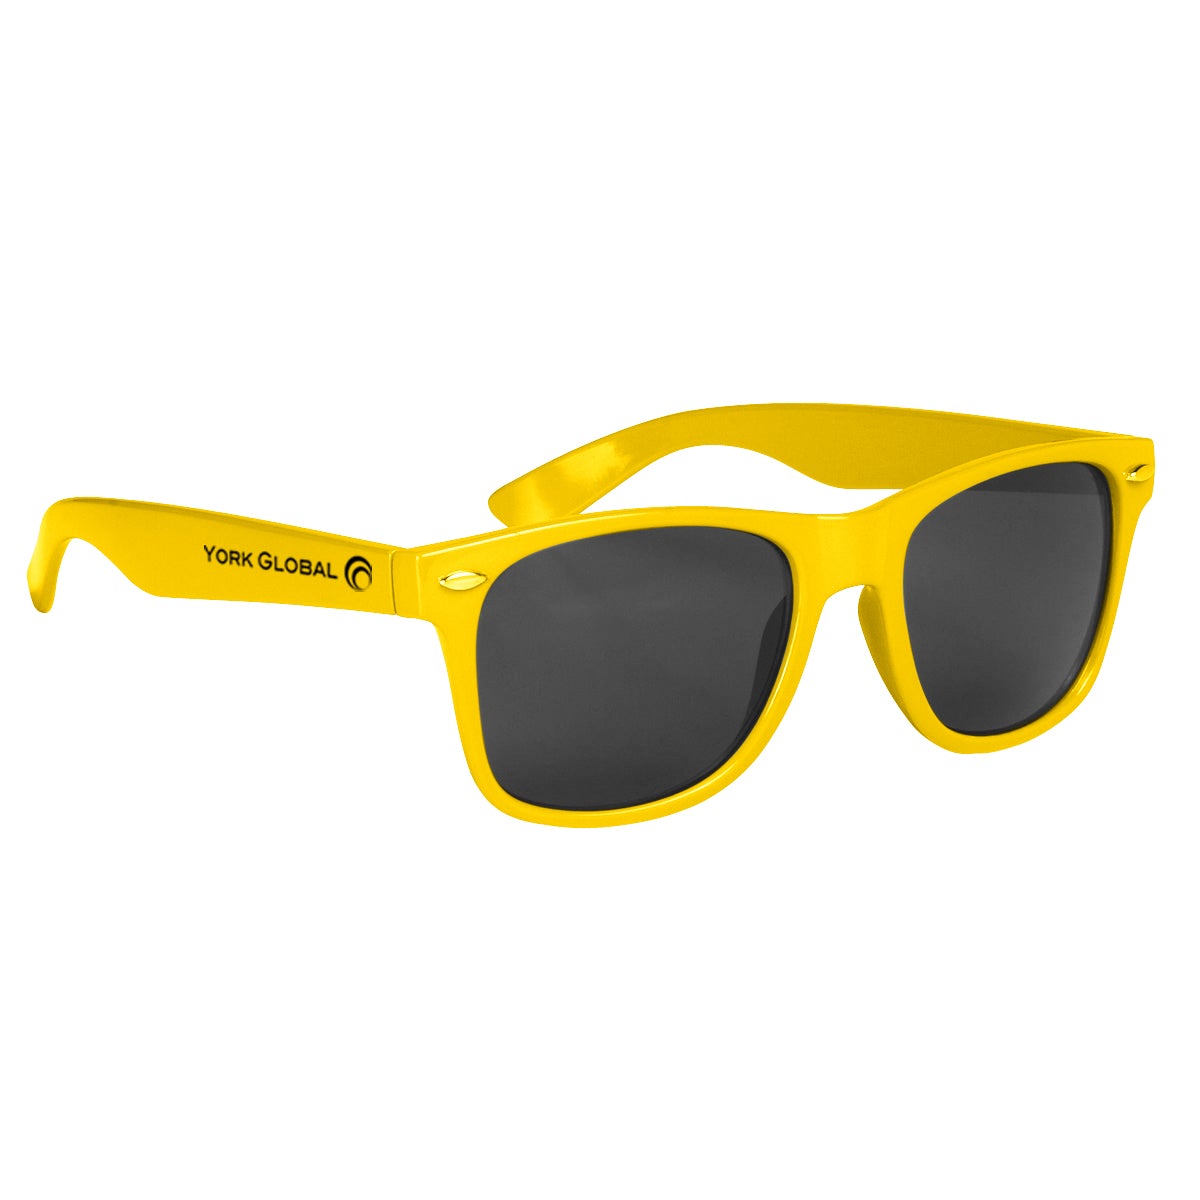 Malibu Sunglasses Sunglasses Hit Promo Bright Yellow Single Color 